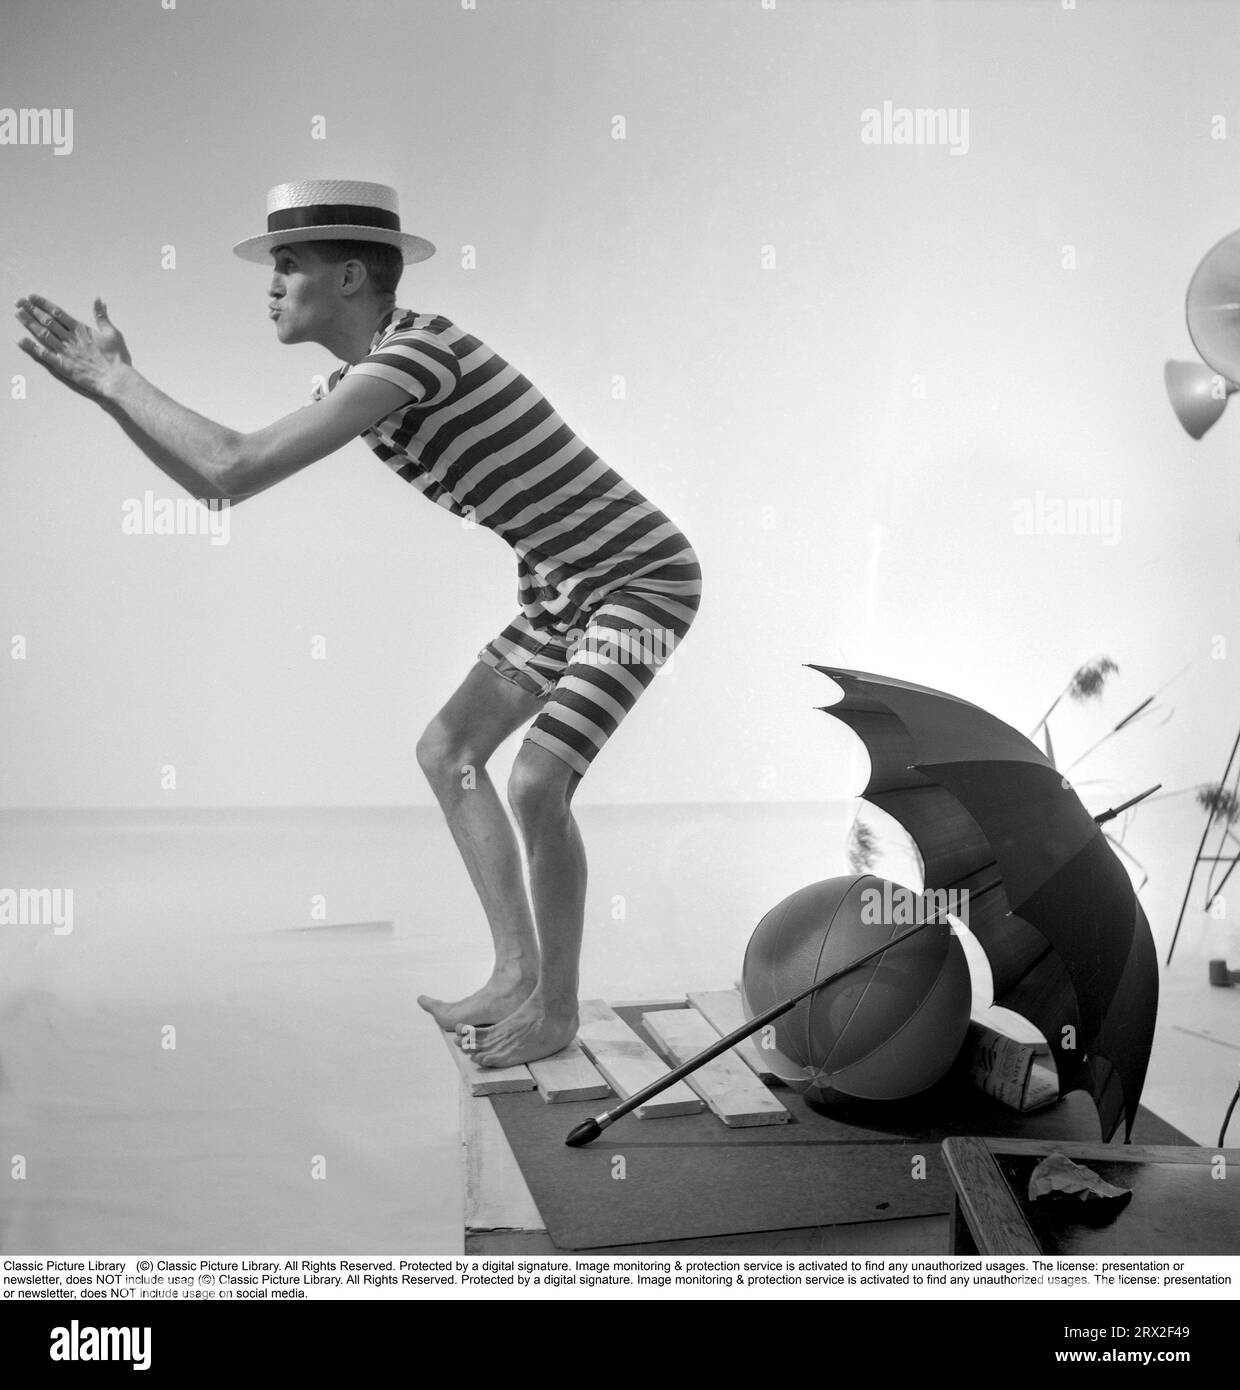 Préparé pour la plage quel que soit le temps. L'homme est assez curieusement habillé dans un maillot de bain masculin historique qui a été utilisé au début du 20e siècle dans un motif rayé sombre et clair.il porte un chapeau dixie et prétend plonger dans l'eau avec ses mains devant lui. Il est prêt pour le mauvais temps comme un parapluie est dans la photo. Suède 1956 Banque D'Images